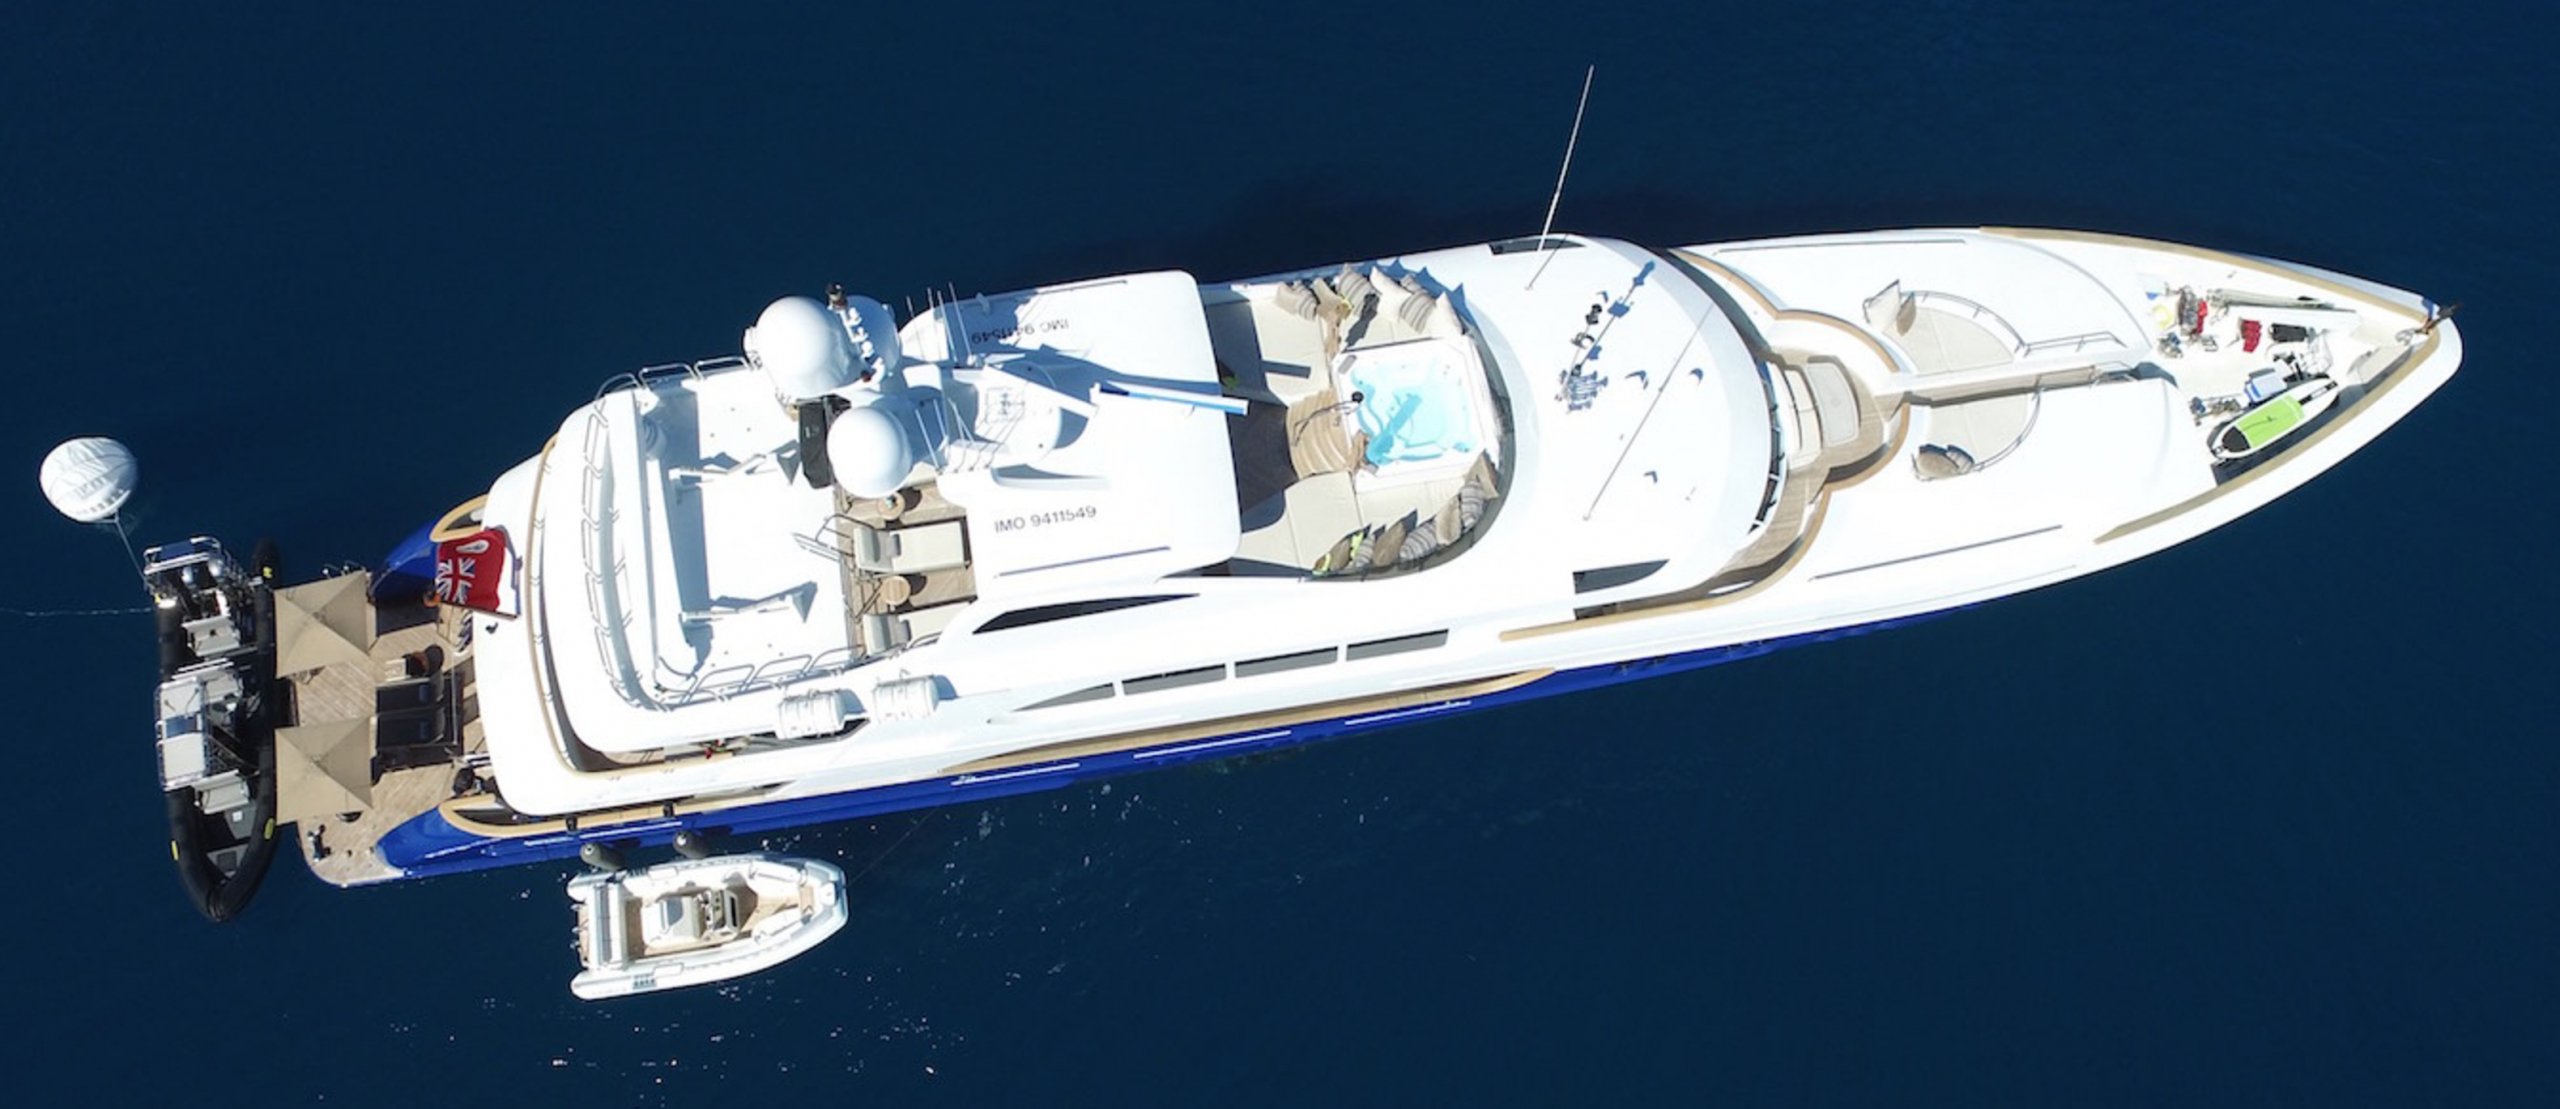 yacht La Dea II – Trinità – 2007 – Shlomo Dovrat 